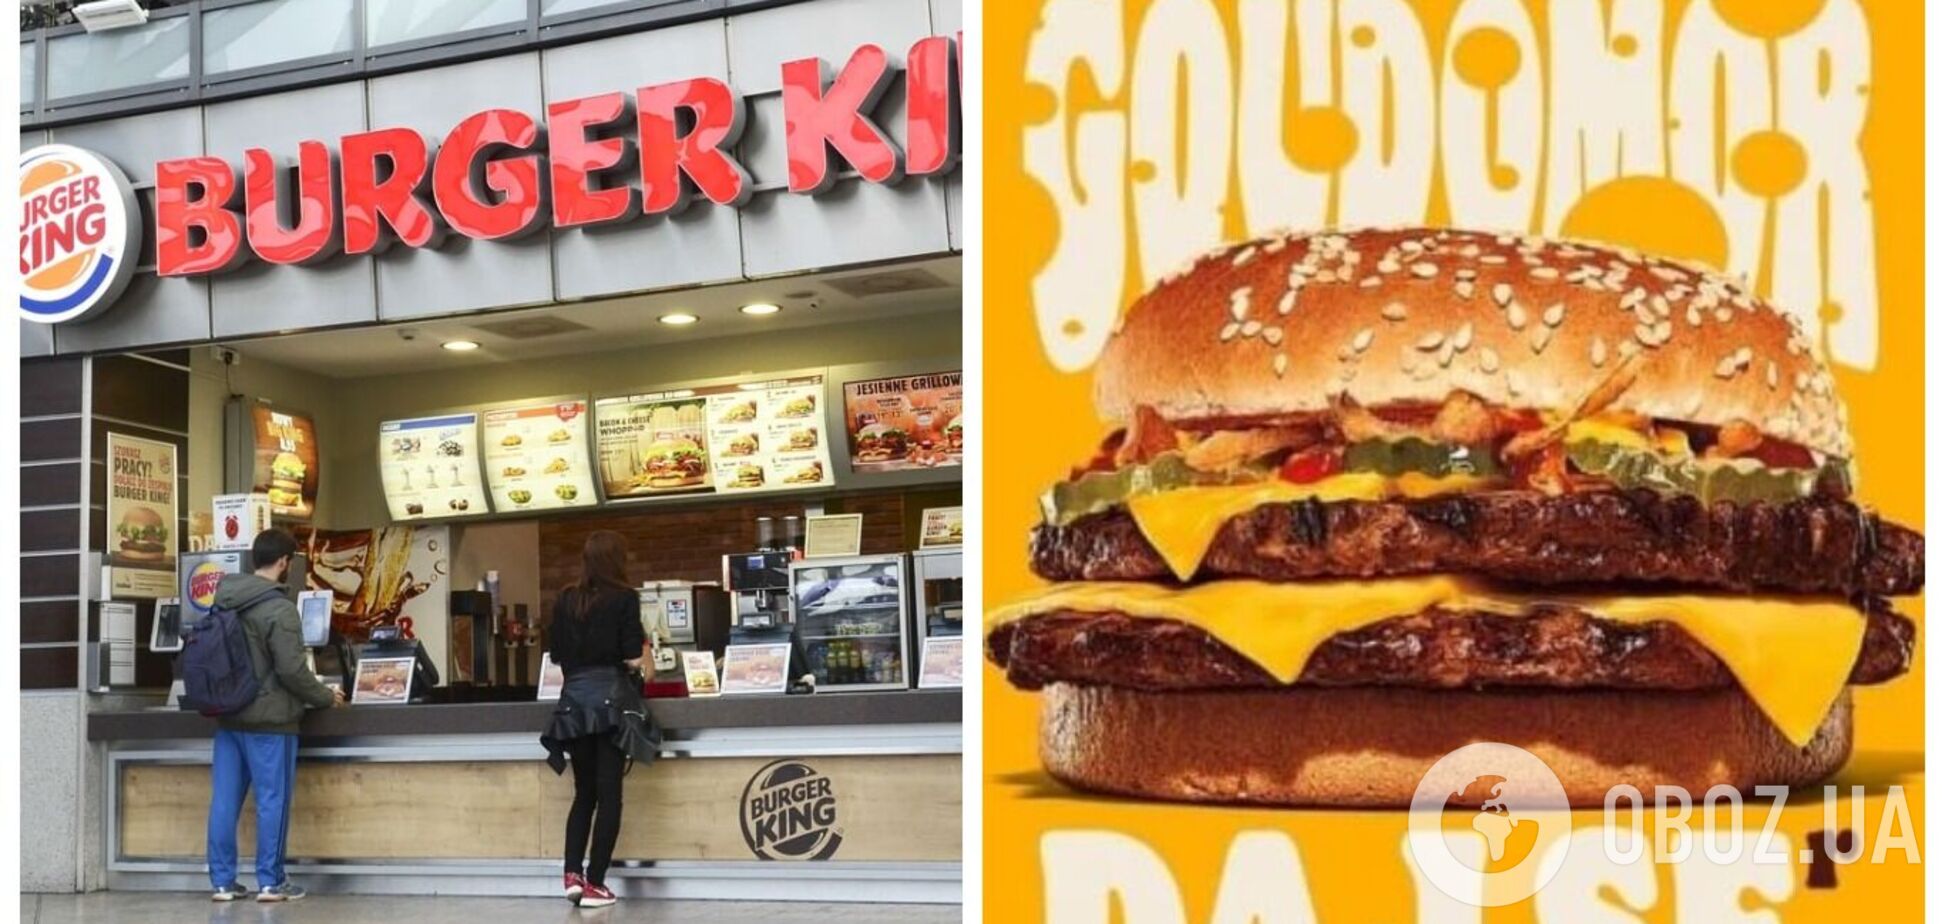 Польский Burger King выпустил бургер Goudomor и попал в скандал: украинцы возмущены. Фото